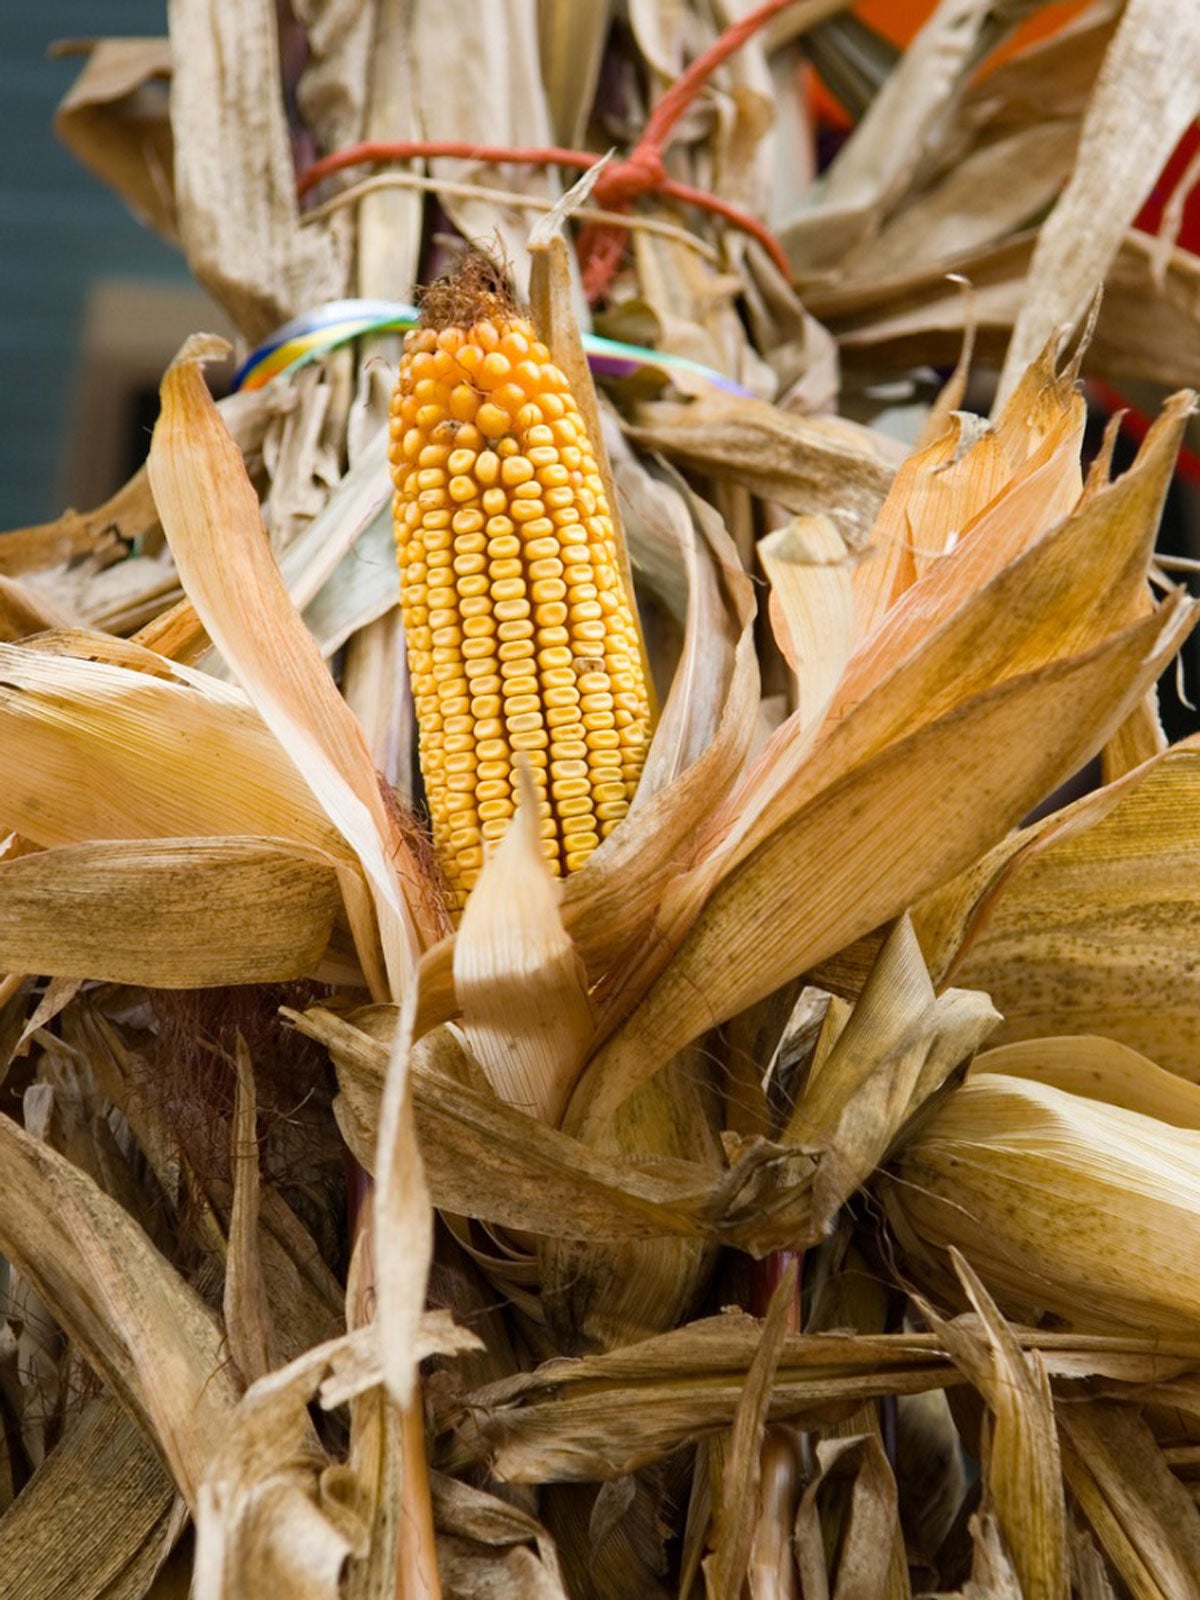 DIY Corn Husk Wreath – Tips For Making A Corn Husk Wreath